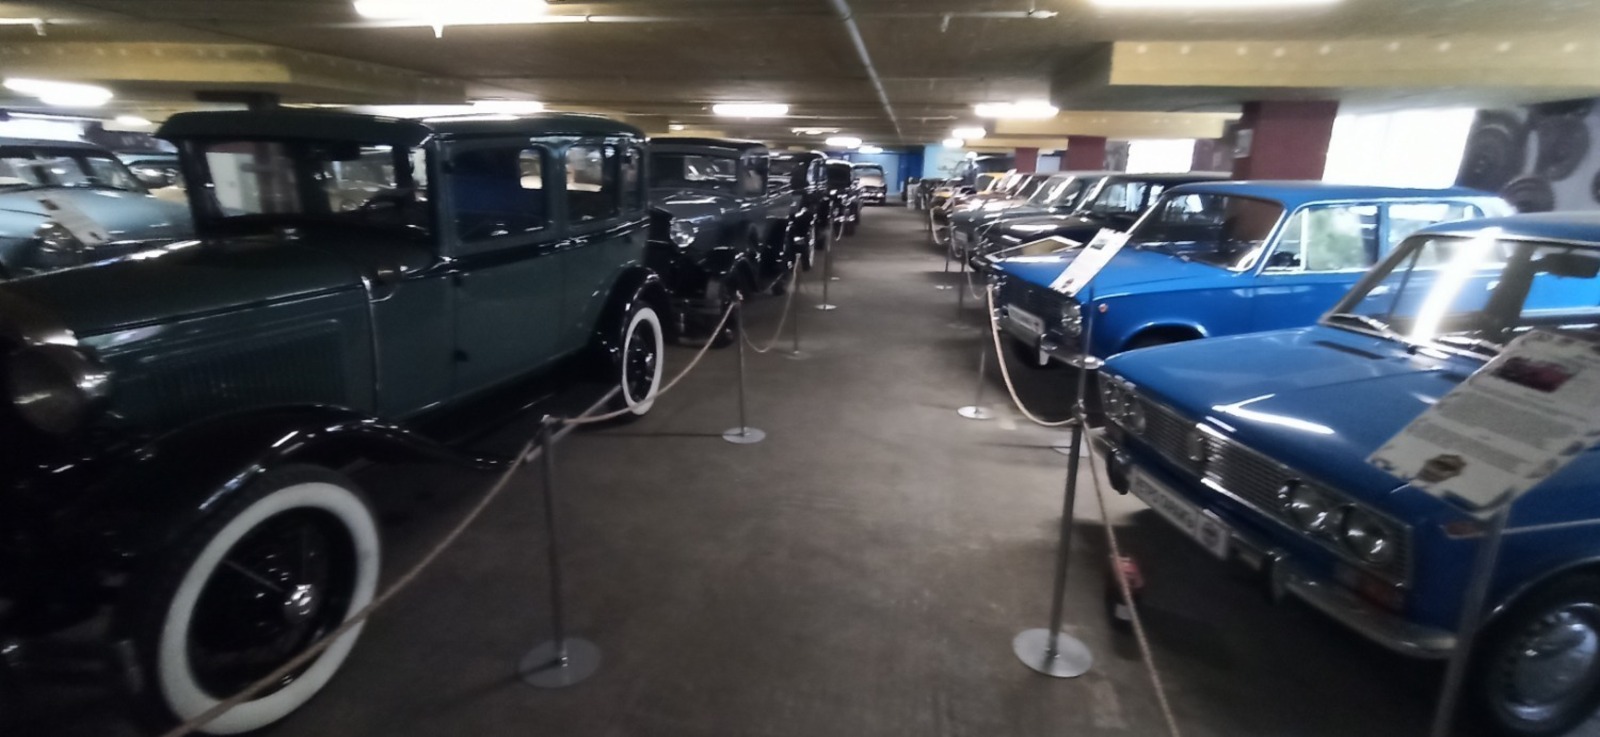 "Ретро - Гараж" музейы уникаль автомобилдәр коллекцияһын тәҡдим итә